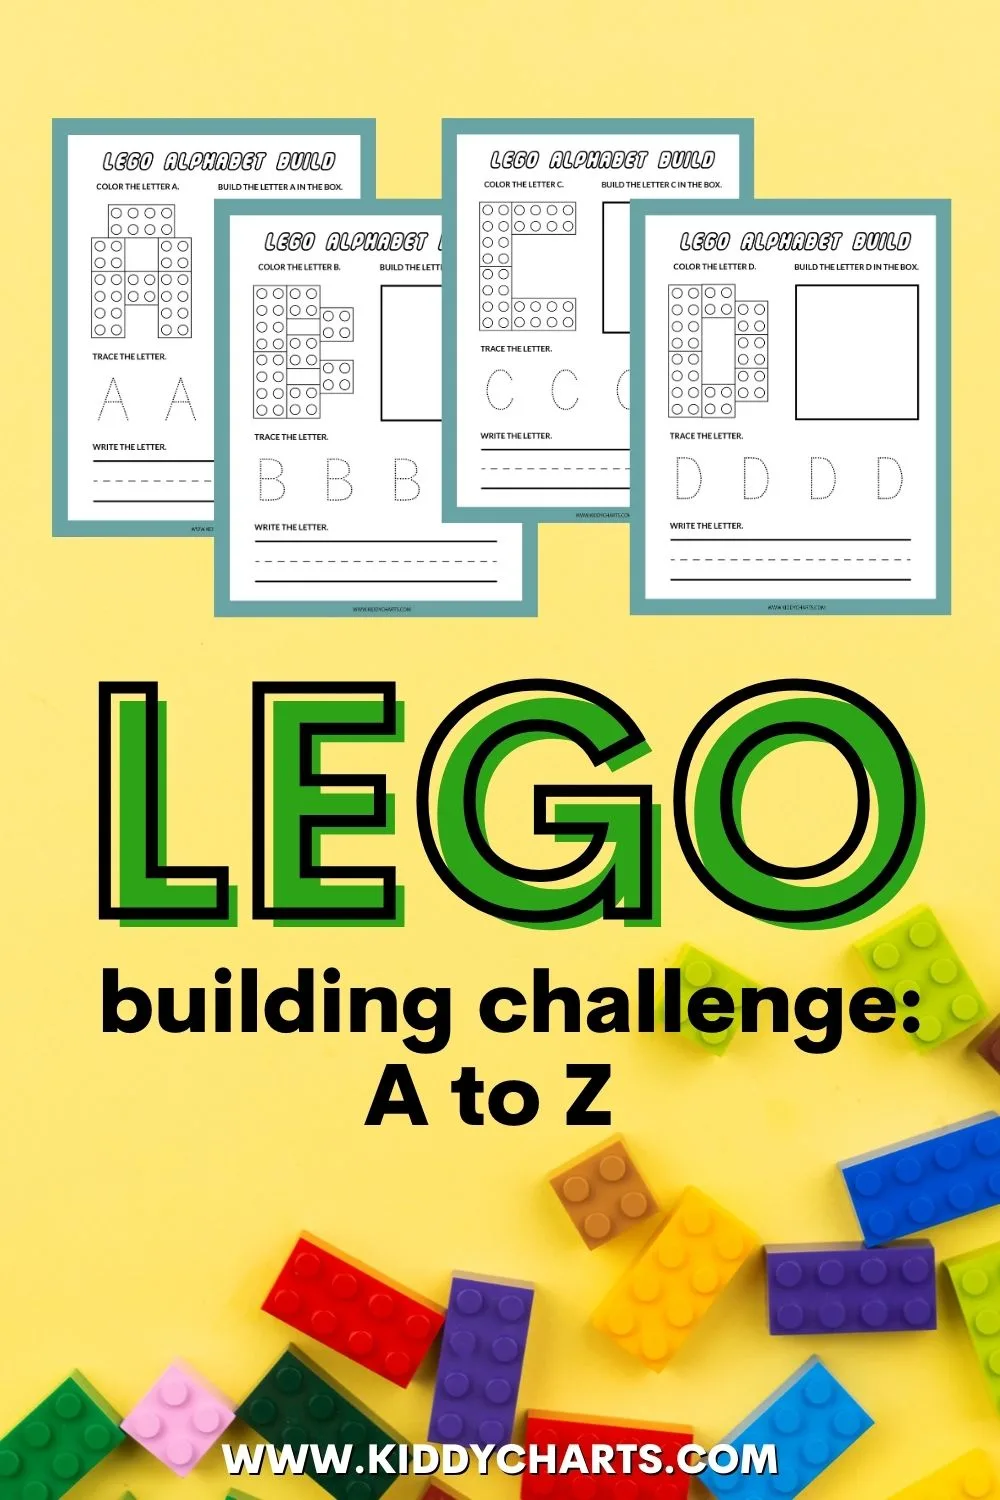 jage golf fordelagtige Lego Building Challenge and Team Ideas - kiddycharts.com